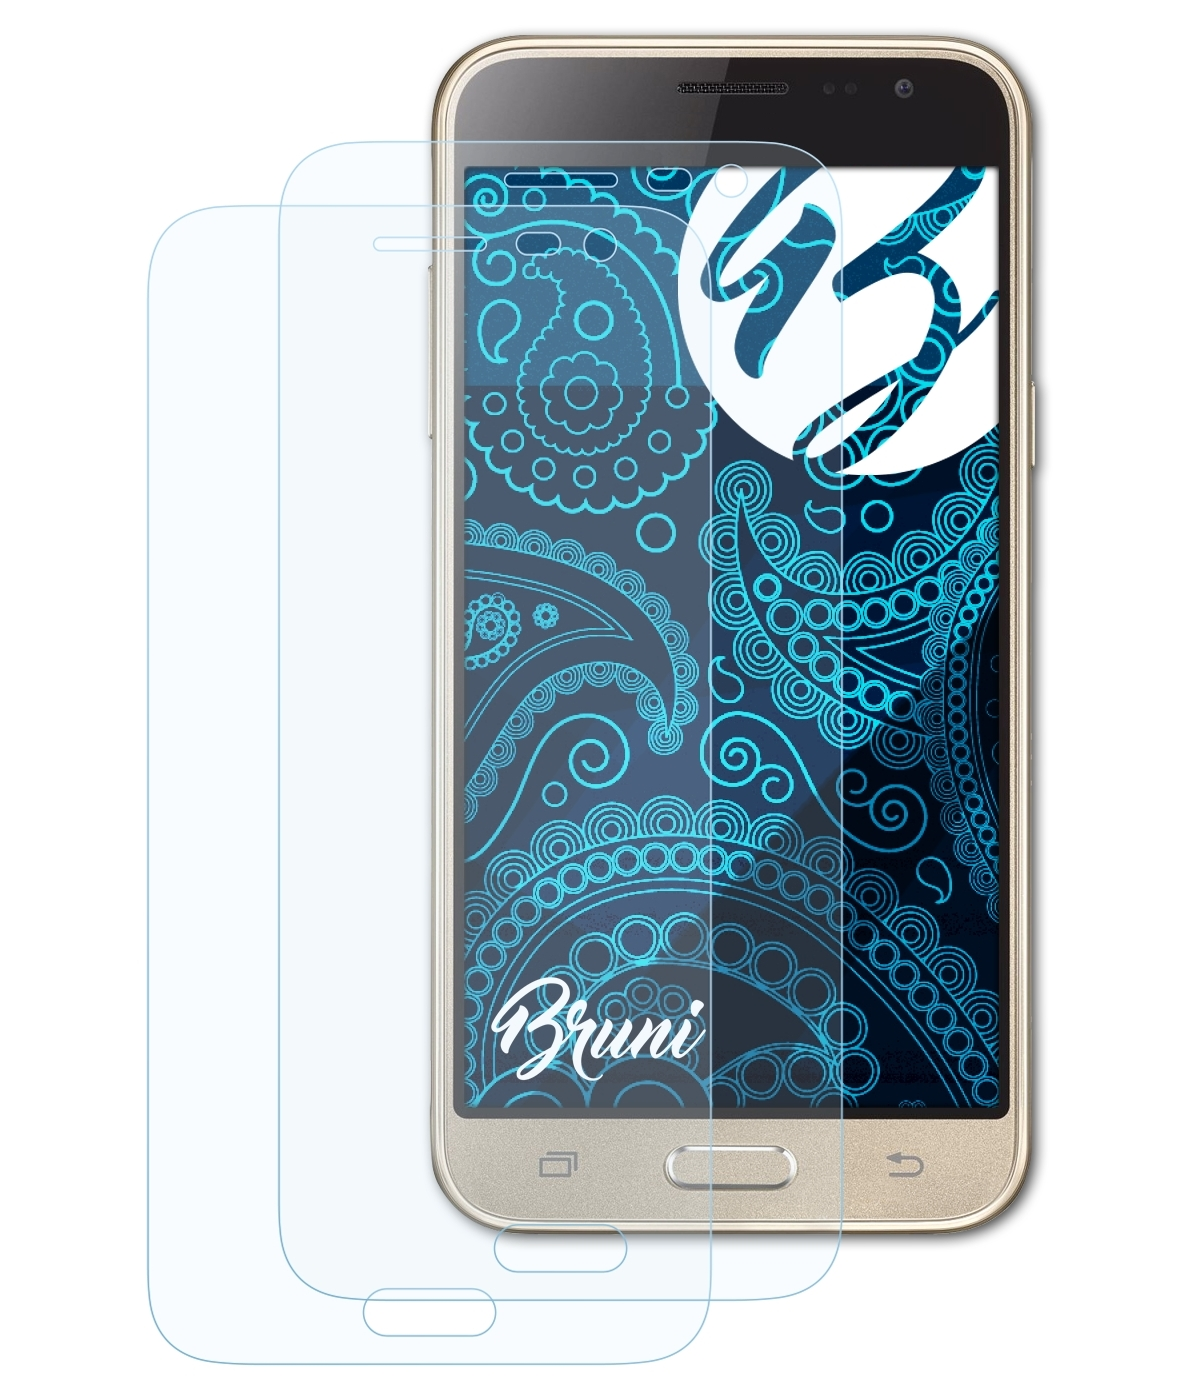 BRUNI 2x Basics-Clear J3 Samsung (2016)) Schutzfolie(für Galaxy